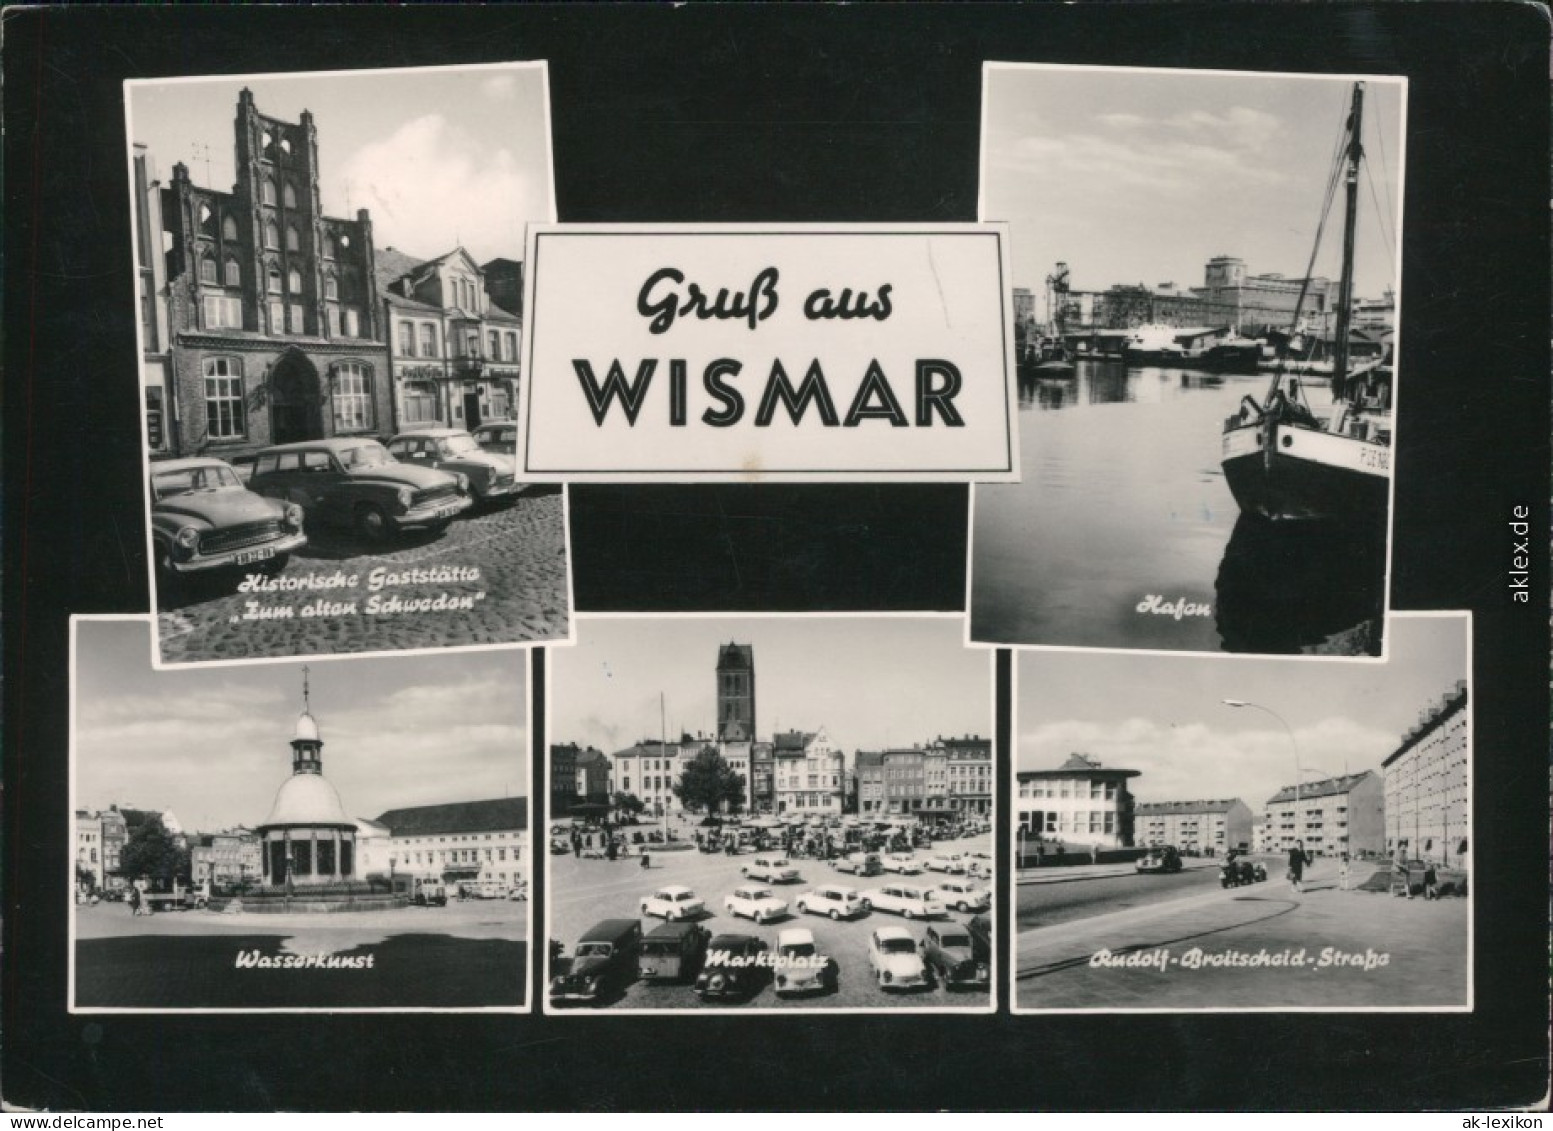 Wismar Wasserkunst, Hafen, Marktplatz, Historische Gaststätte Schweden 1967 - Wismar